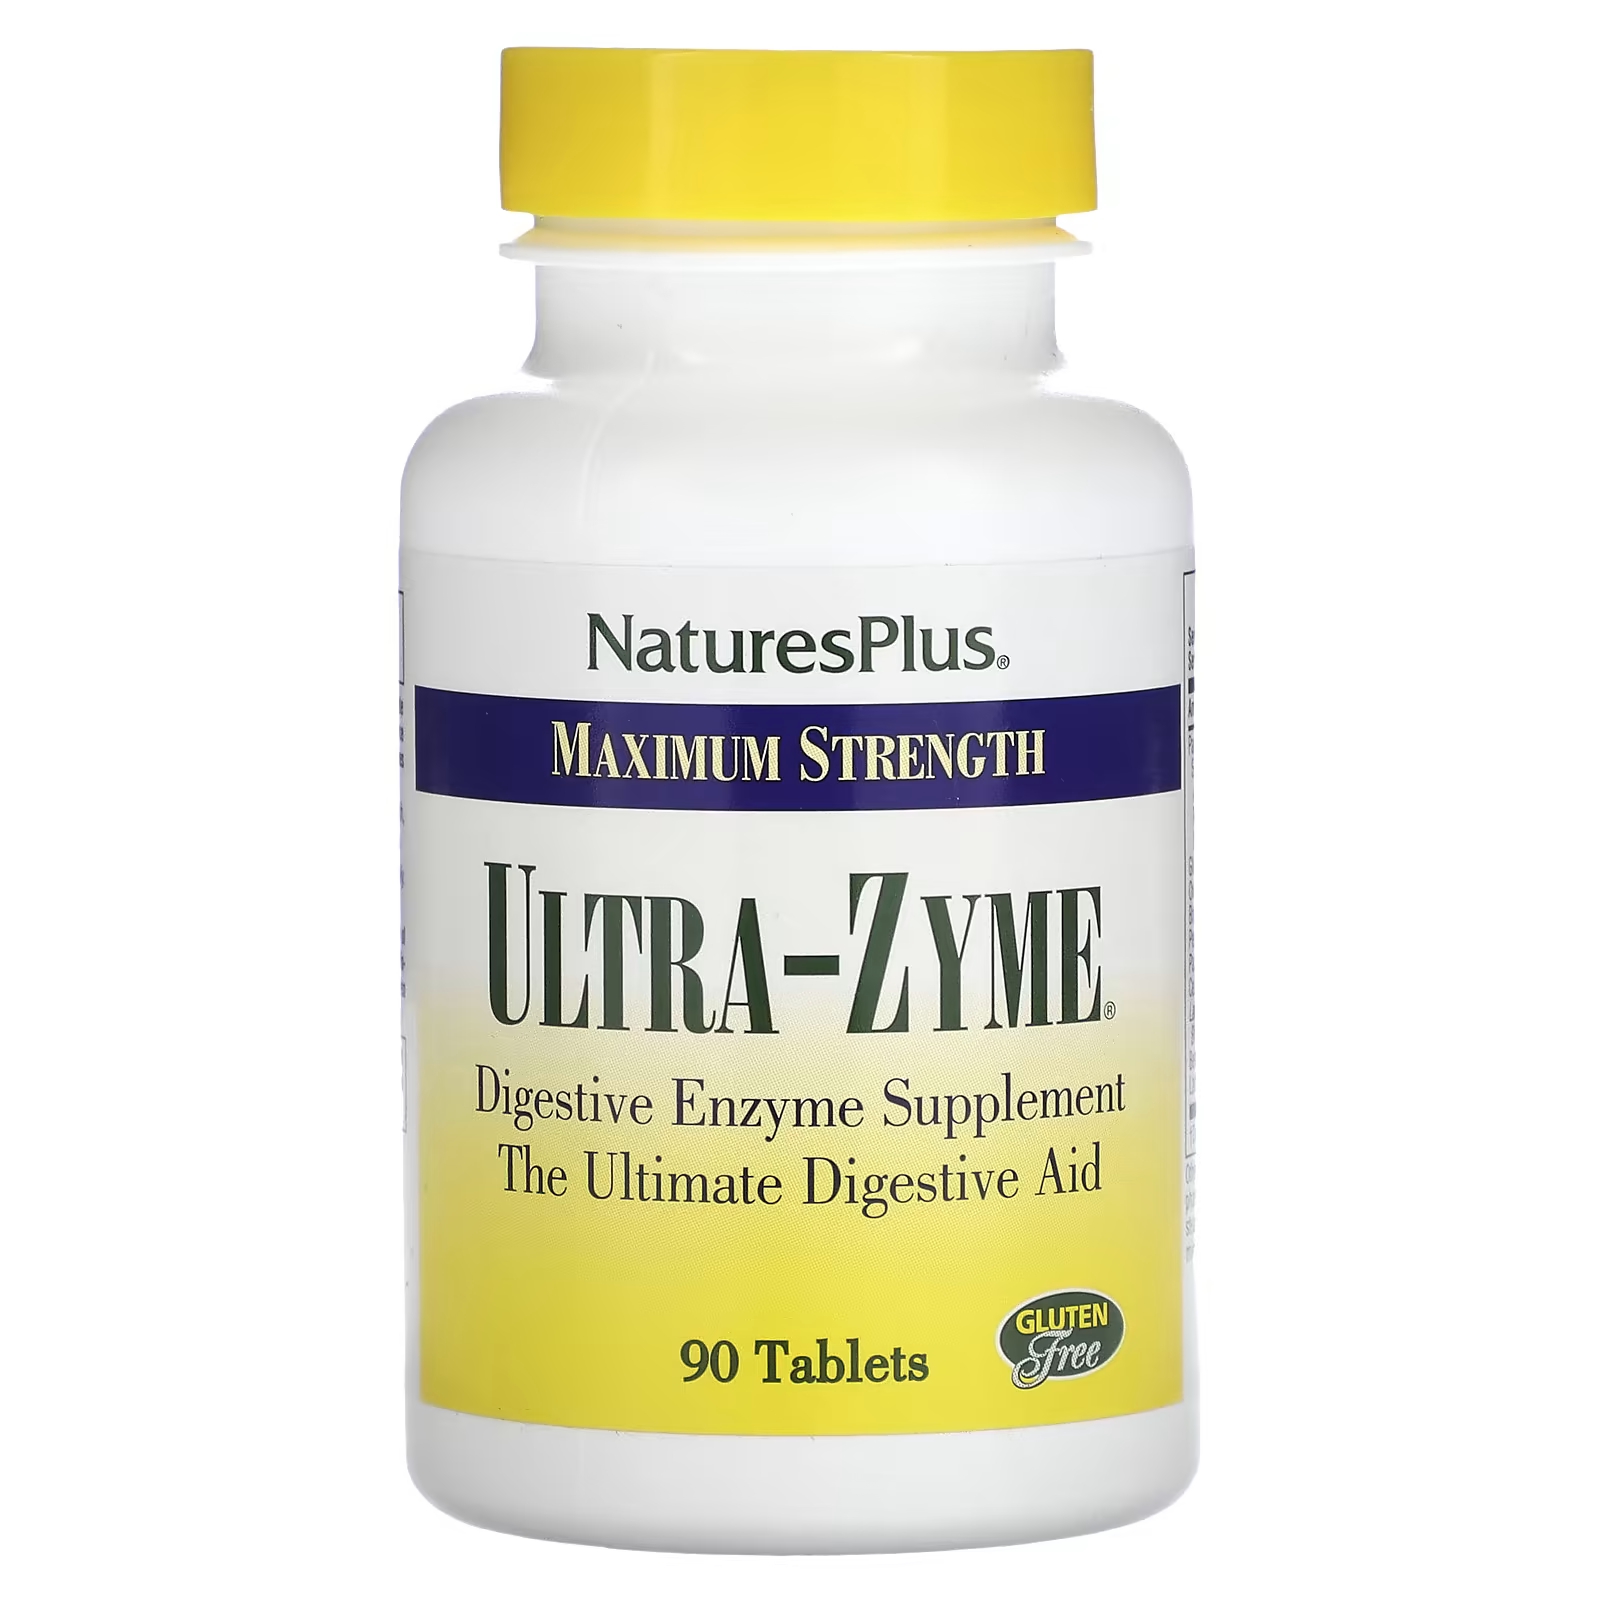 Пищевая добавка NaturesPlus Максимальная сила Ultra-Zyme, 90 таблеток naturesplus ultra e fem для женщин максимальная сила 90 таблеток пролонгированного действия